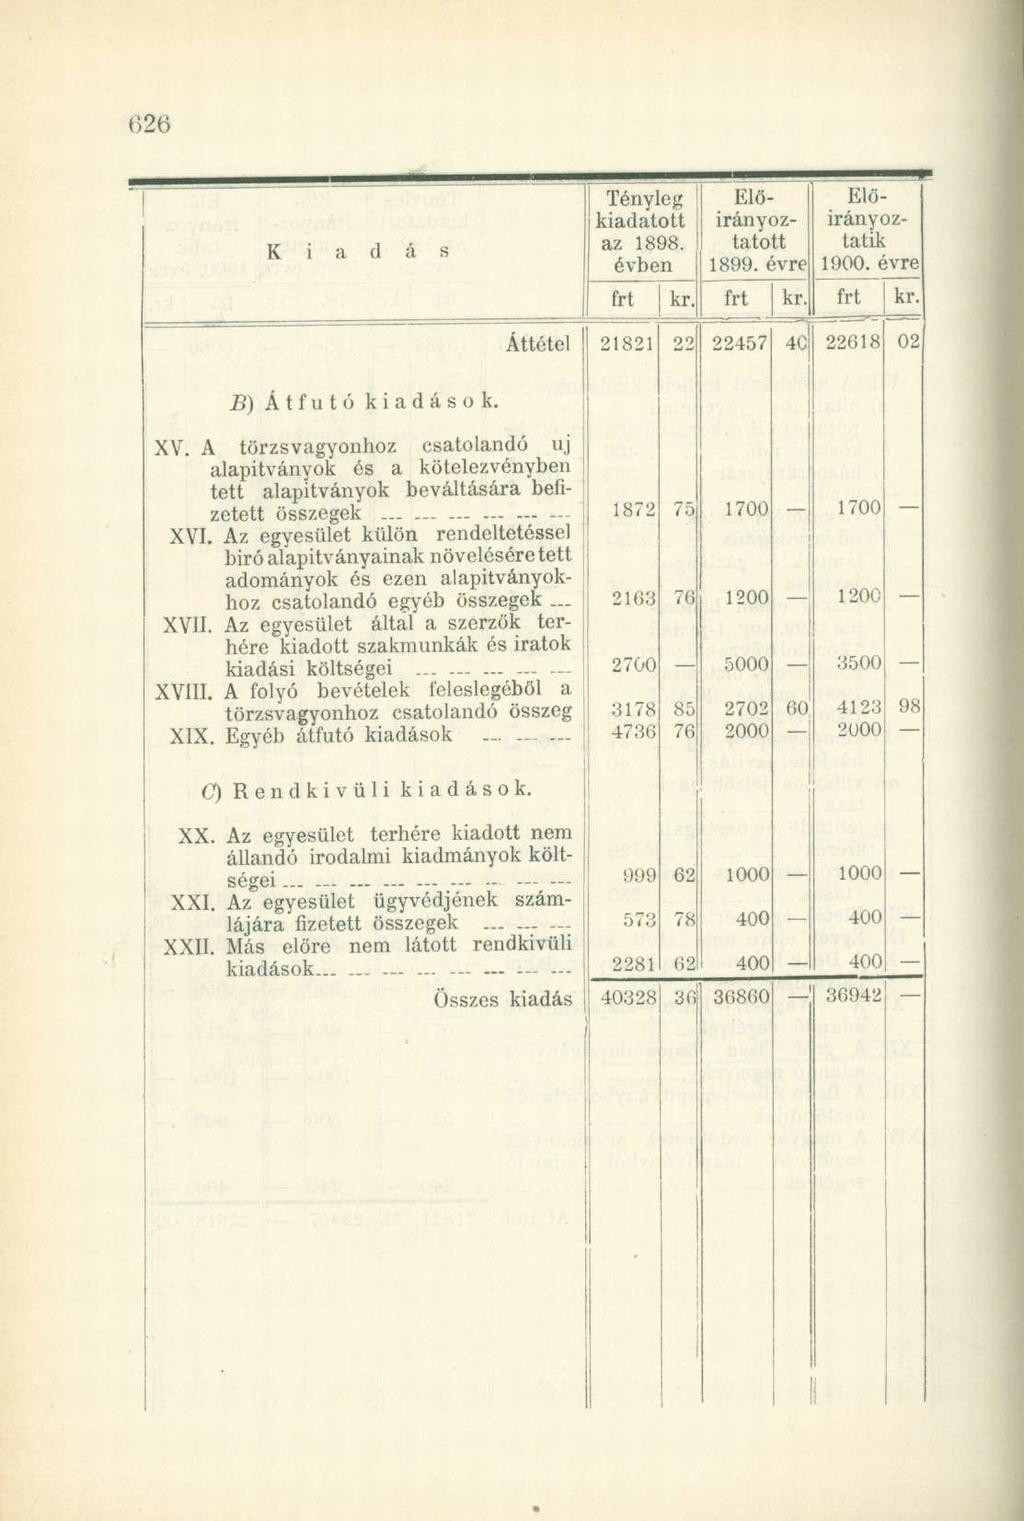 K i Tényleg kiadatott az 1898. évben EIőirányoztatott 1899. évre; Előirányoztatik 1900. évrel kr. kr Áttétel 21821 22457 4C B) Átfutó kiadások. XV.